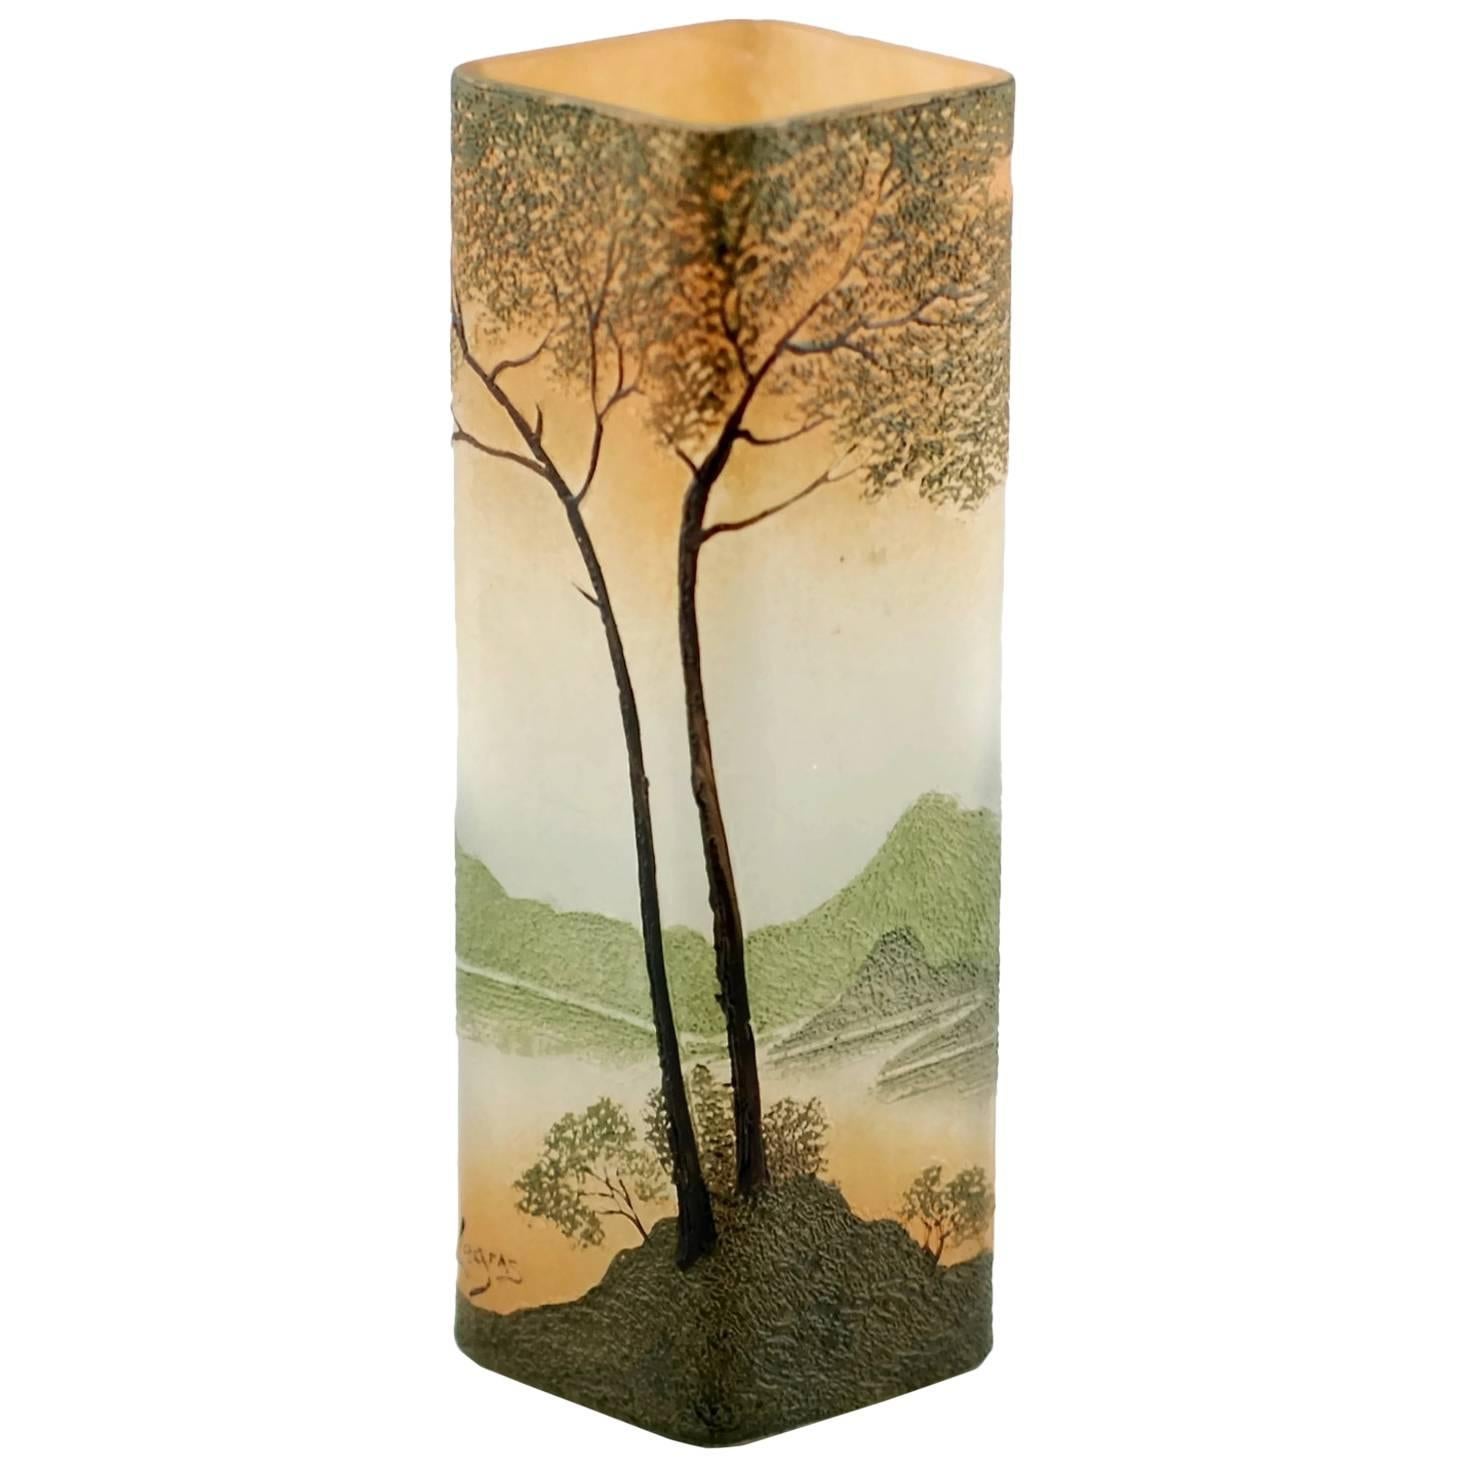 Art Nouveau Legras Enameled Cameo Glass Vase with Landscape Motif